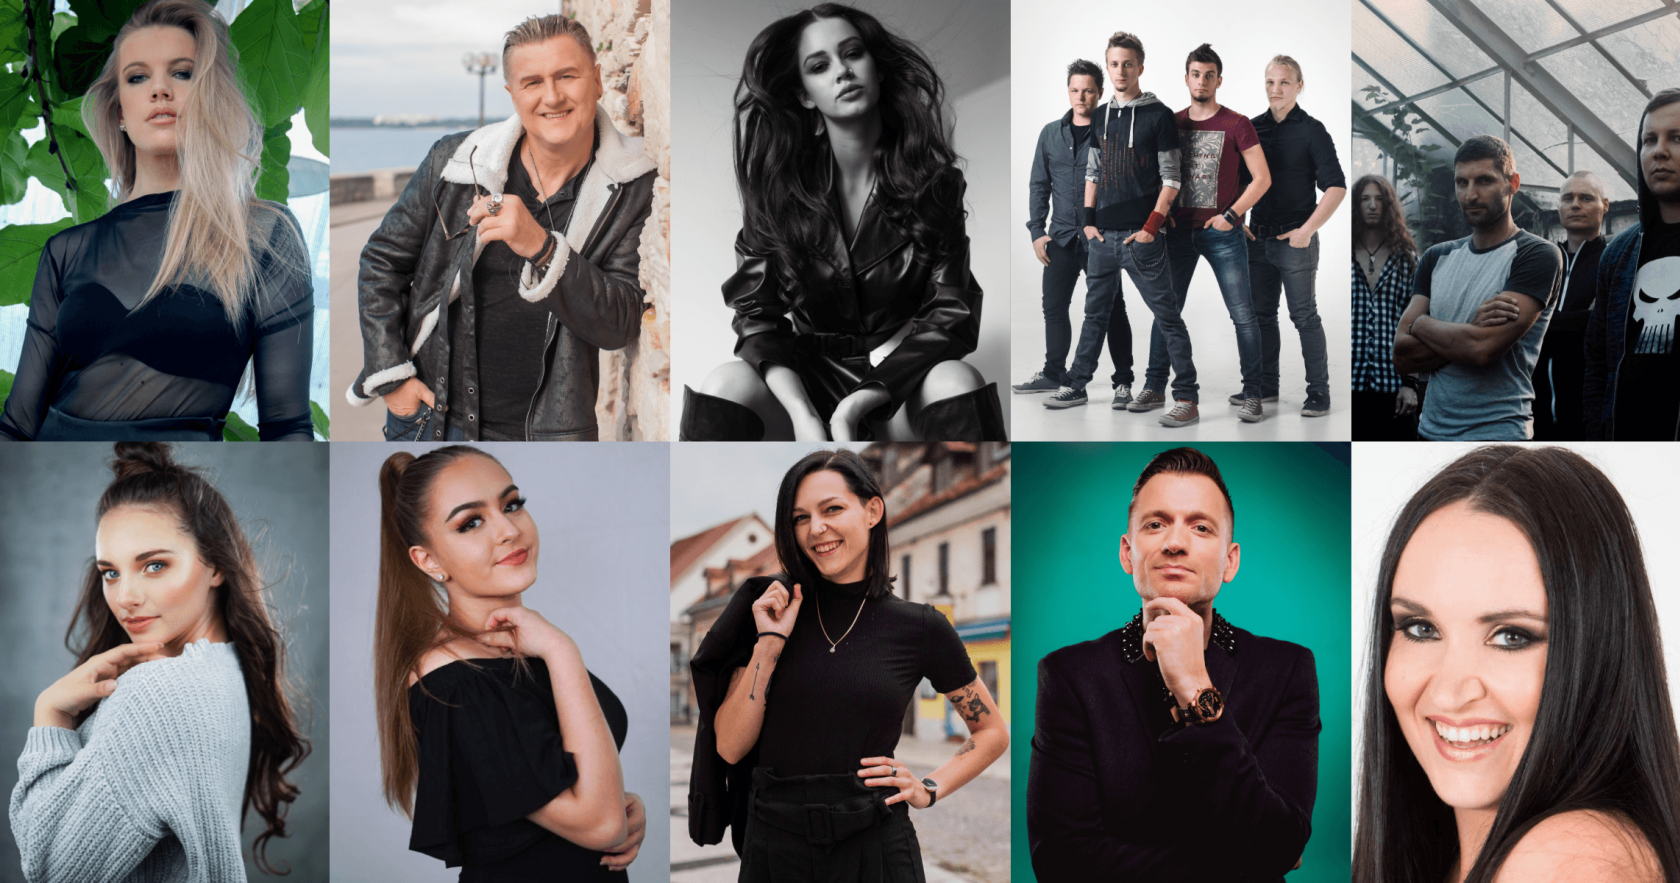 Σλοβενία: Ακούστε τα μονόλεπτα αποσπάσματα των τραγουδιών του EMA 2020